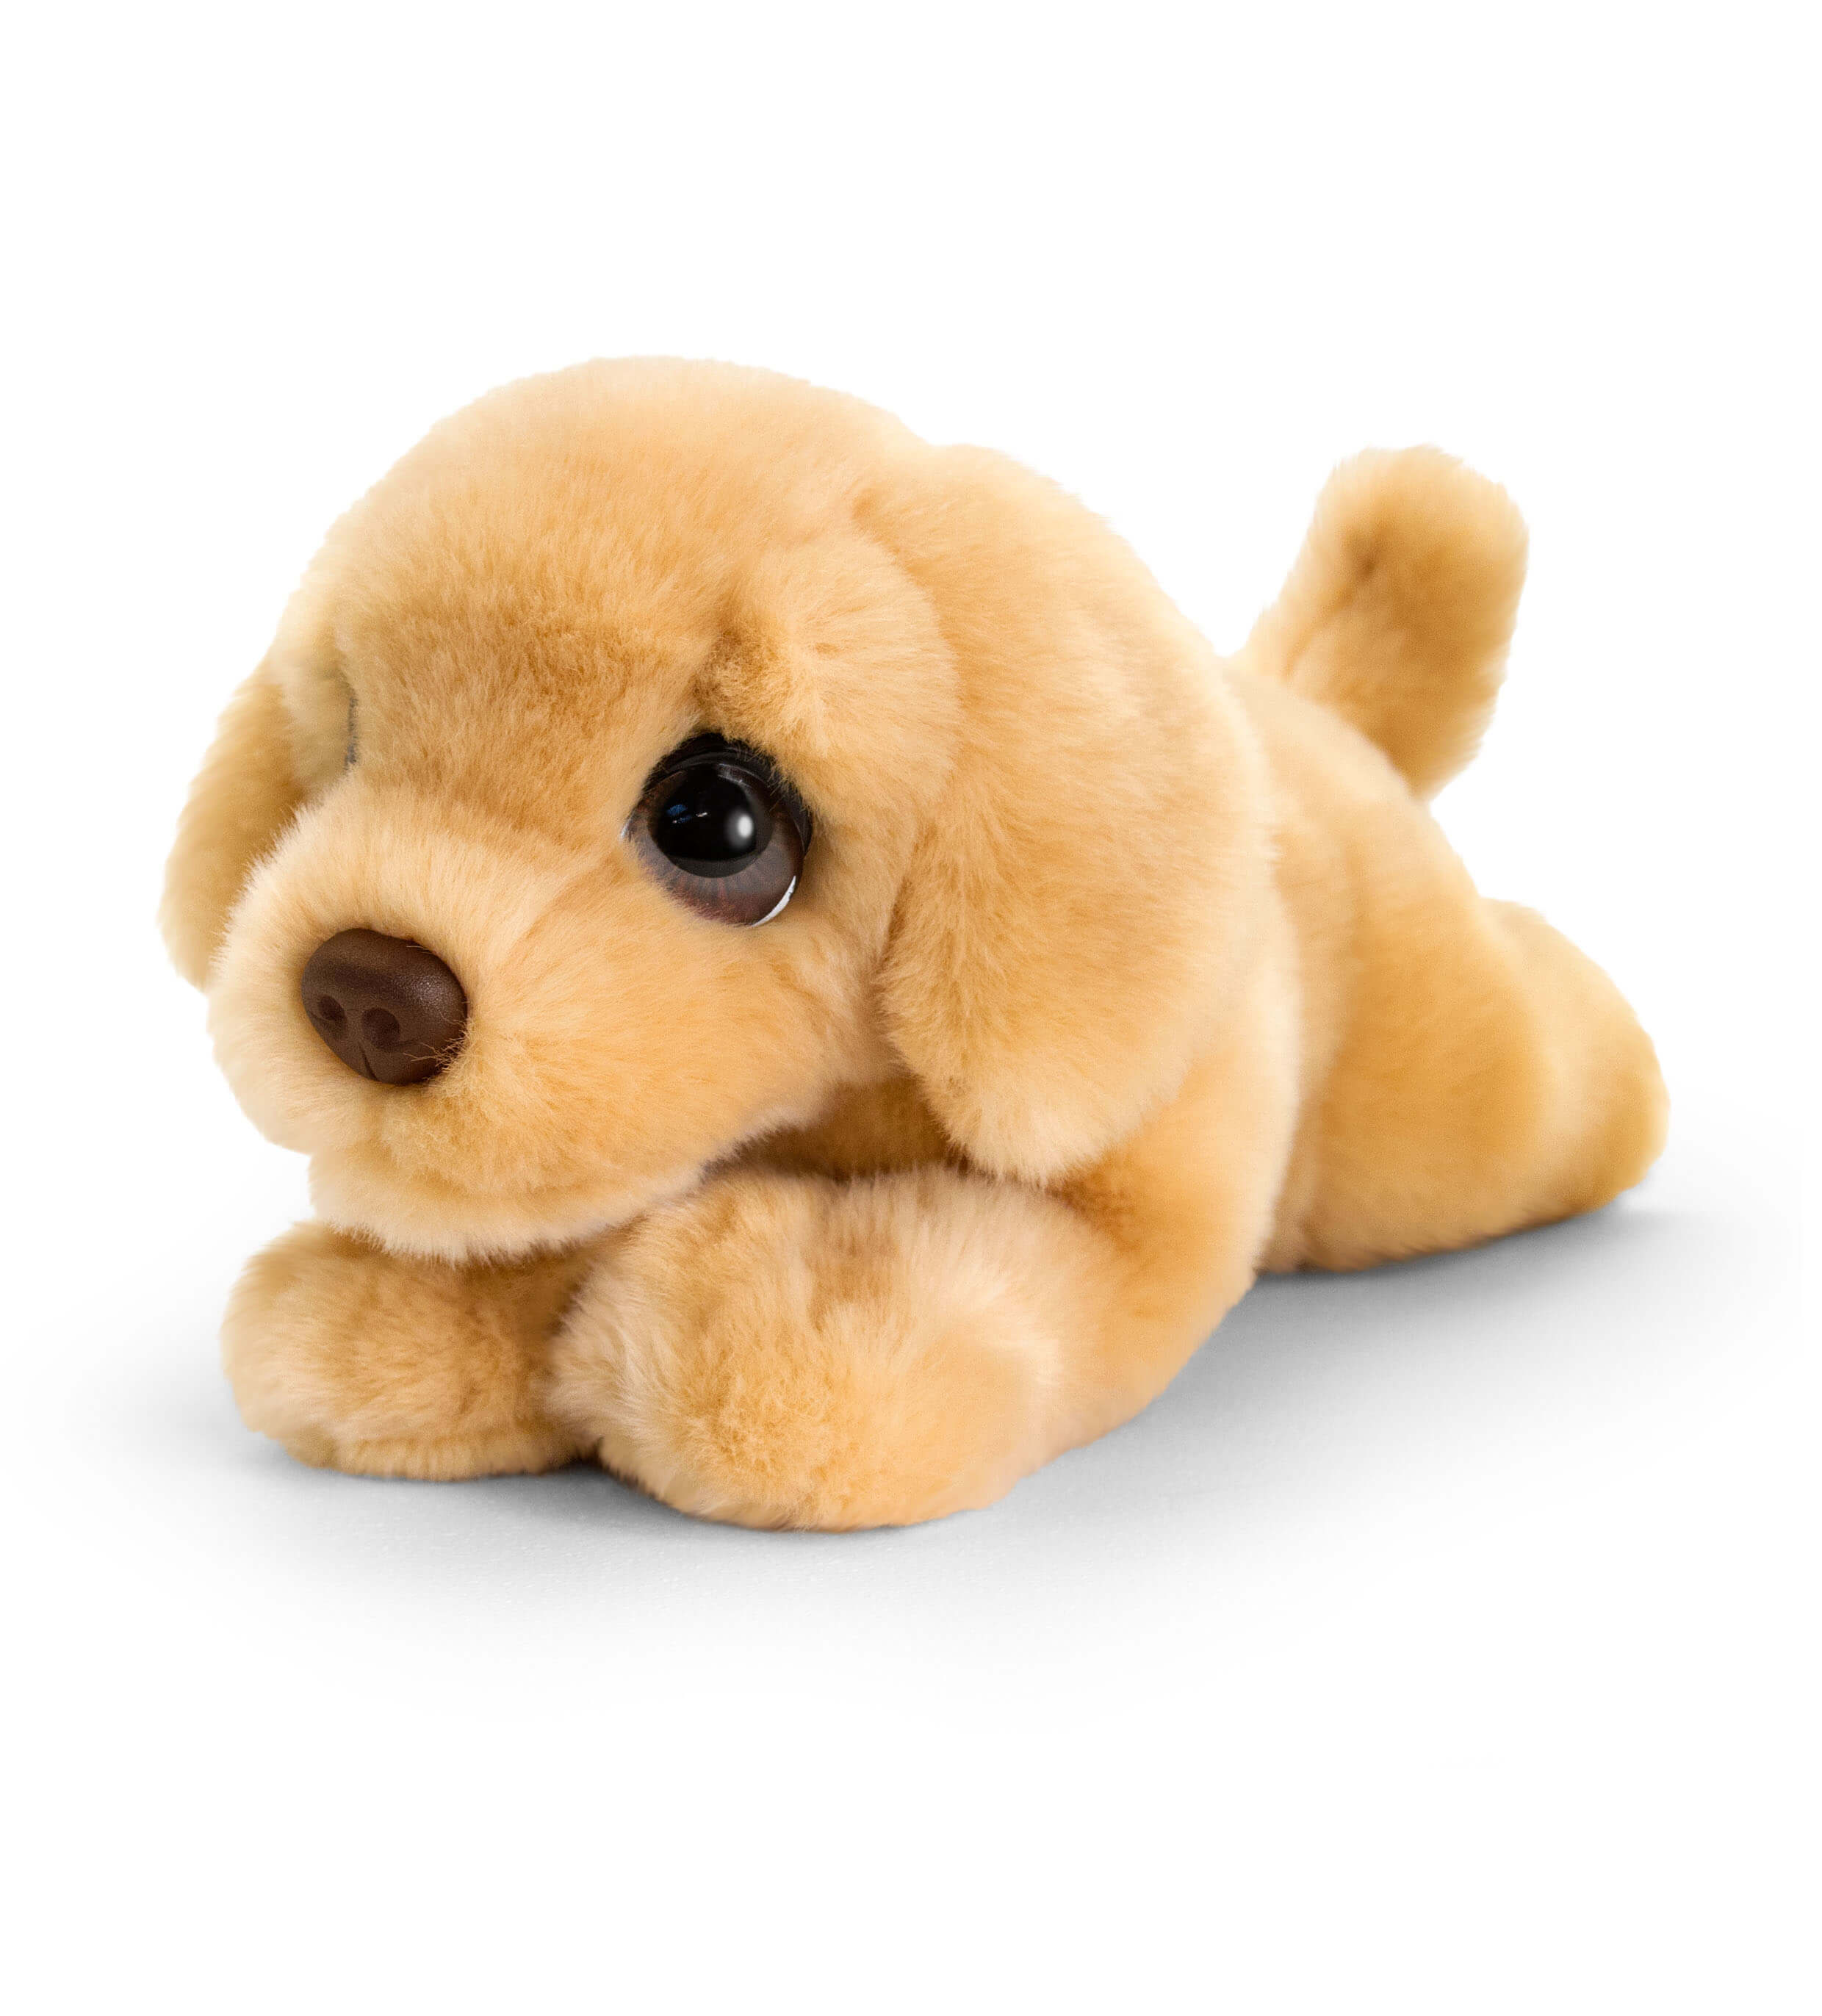 cuddly puppy toy